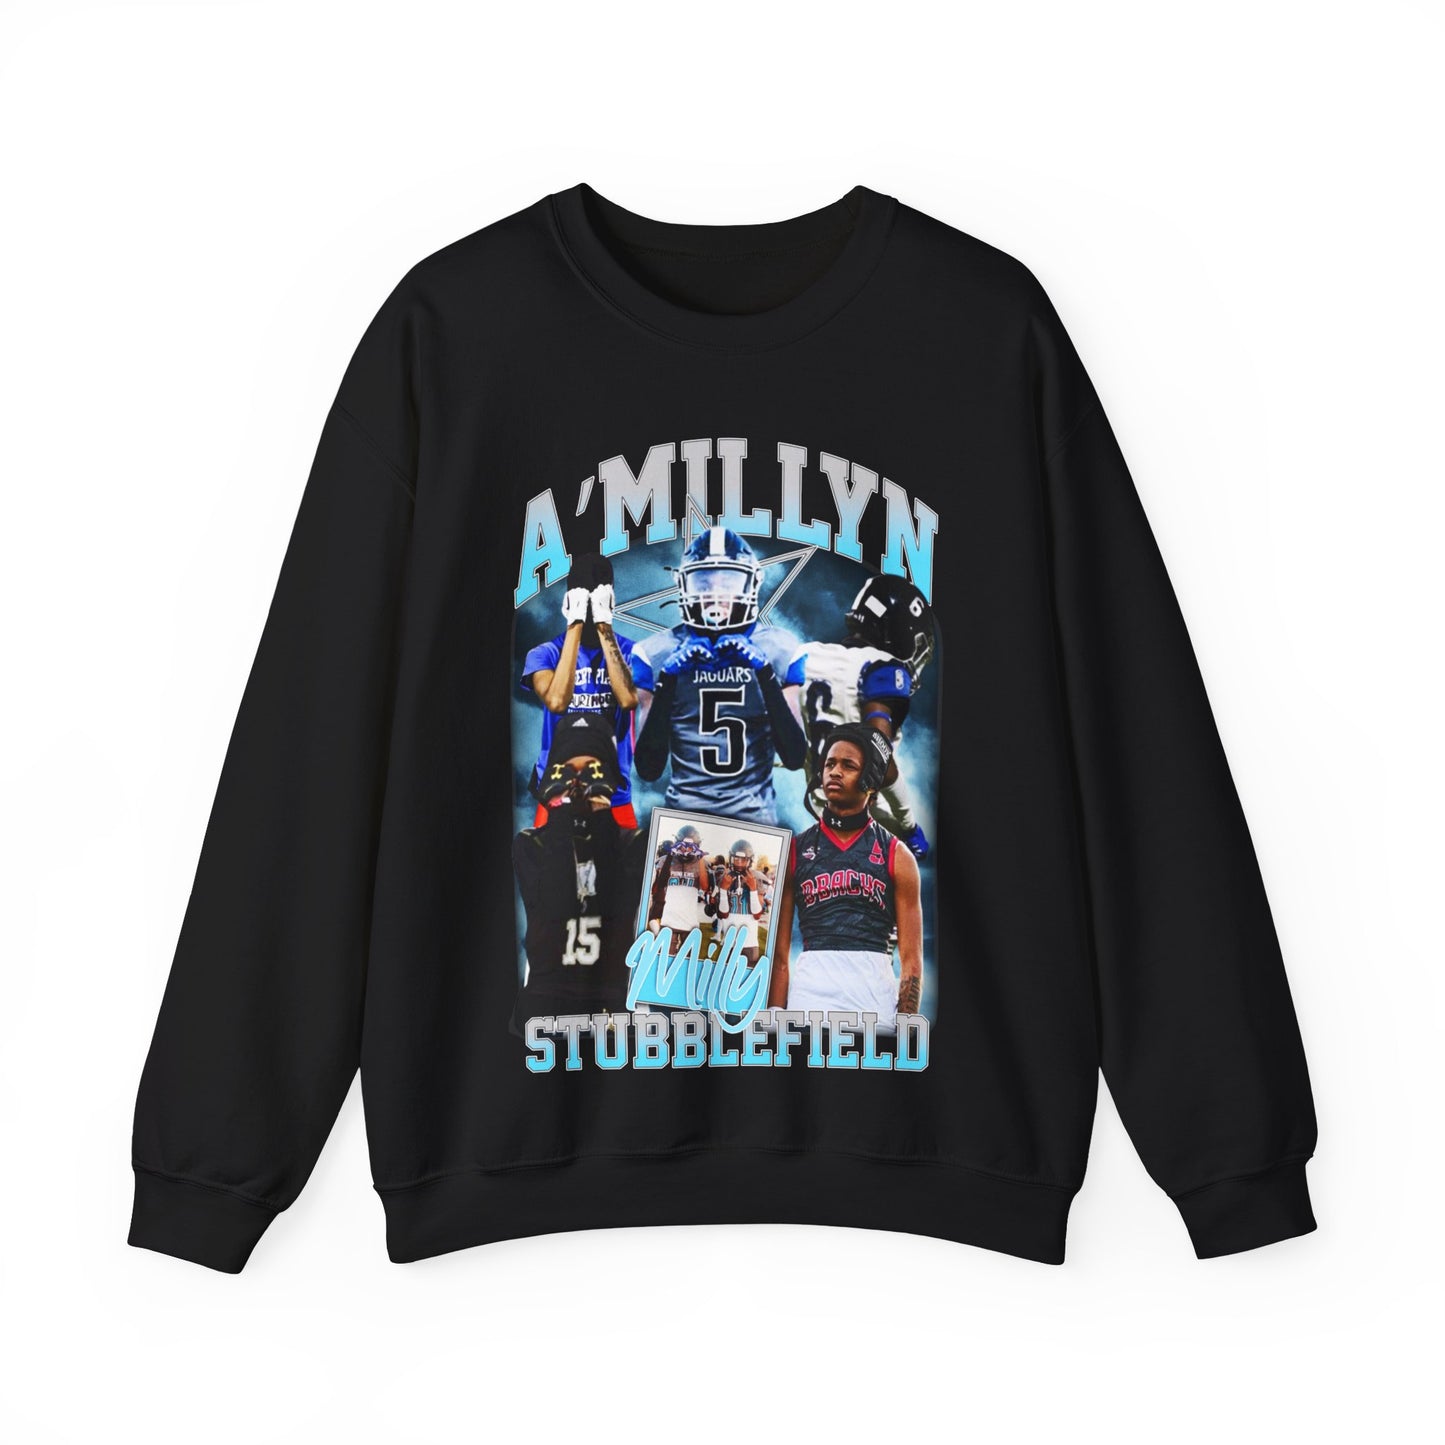 A'millyn Stubblefield Crewneck Sweatshirt